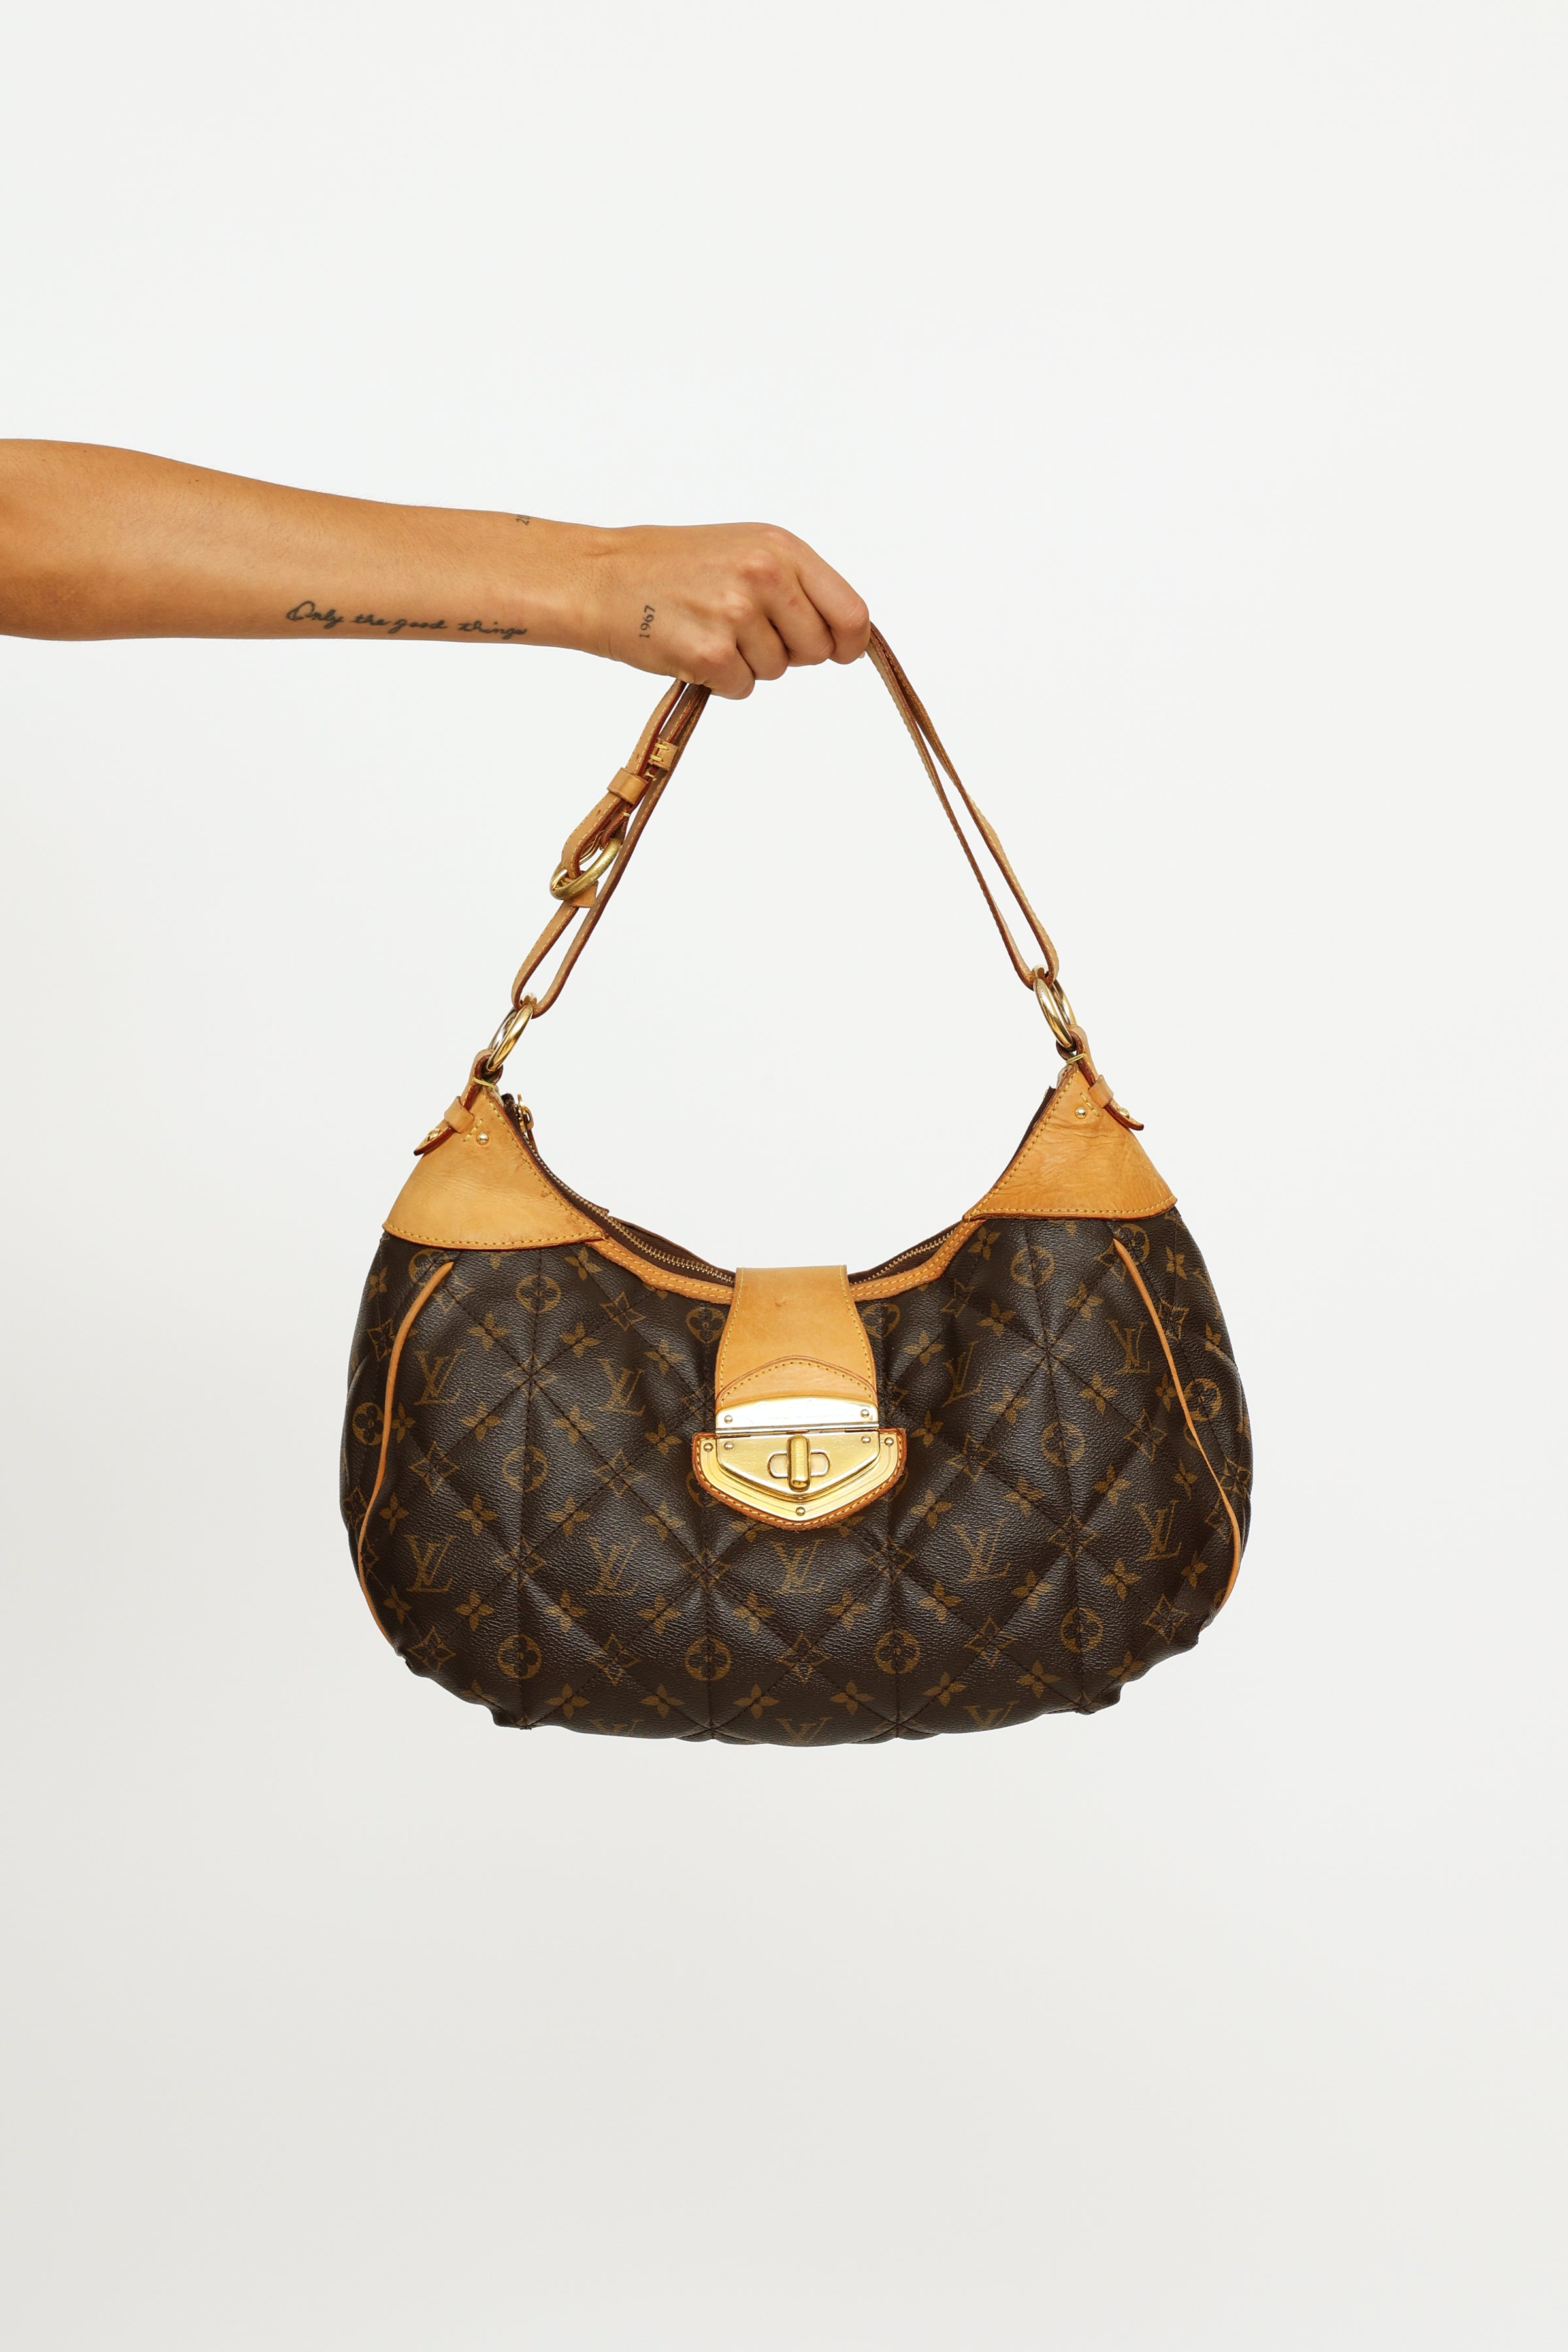 Used Louis Vuitton City Bag Pm Etoile Brw/Pvc/Brw